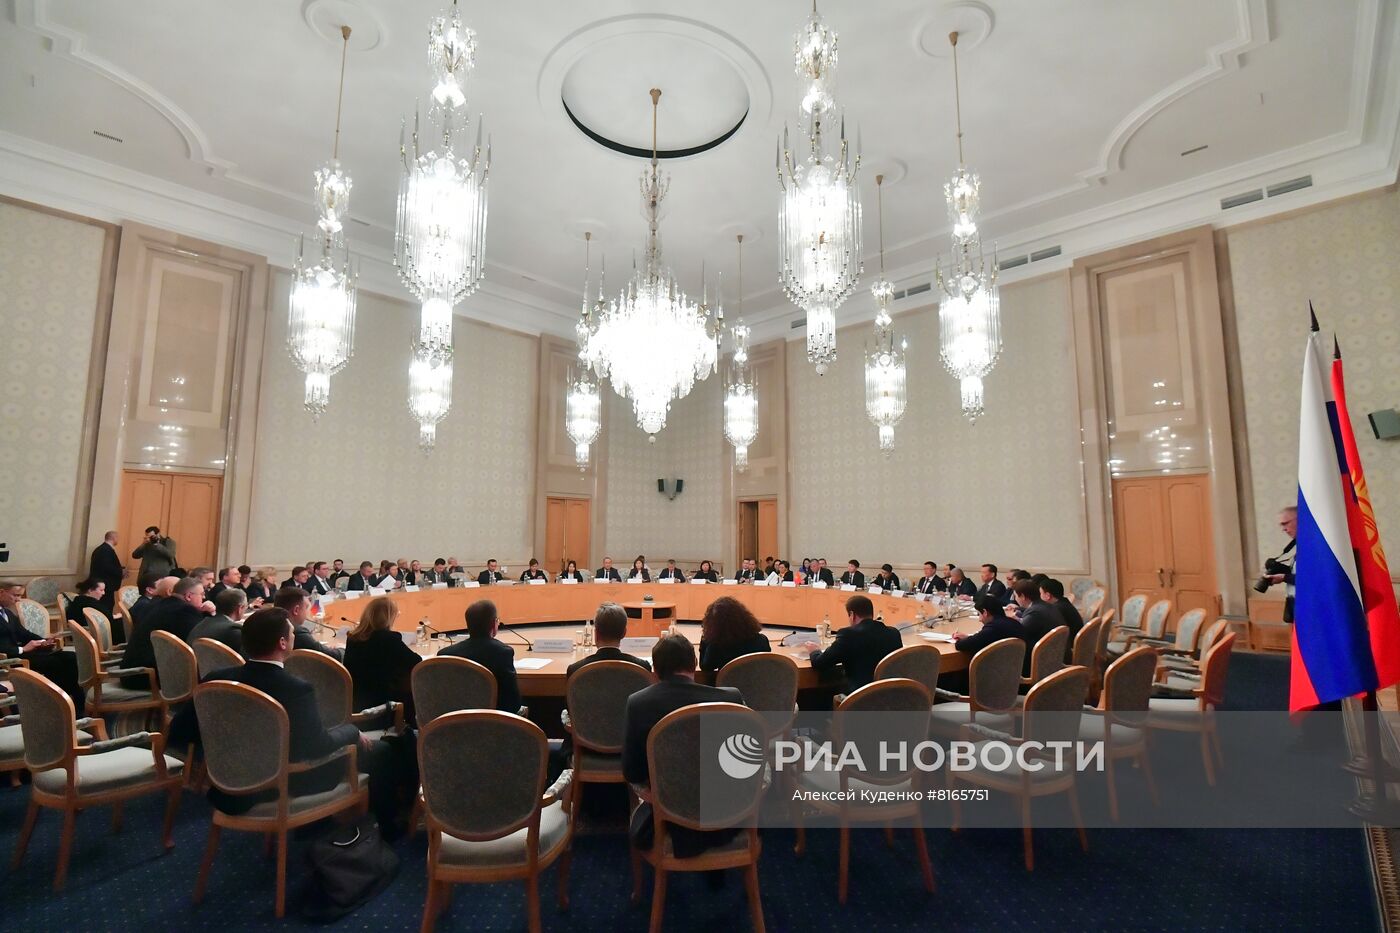 Заседание Межправительственной Российско-Киргизской комиссии